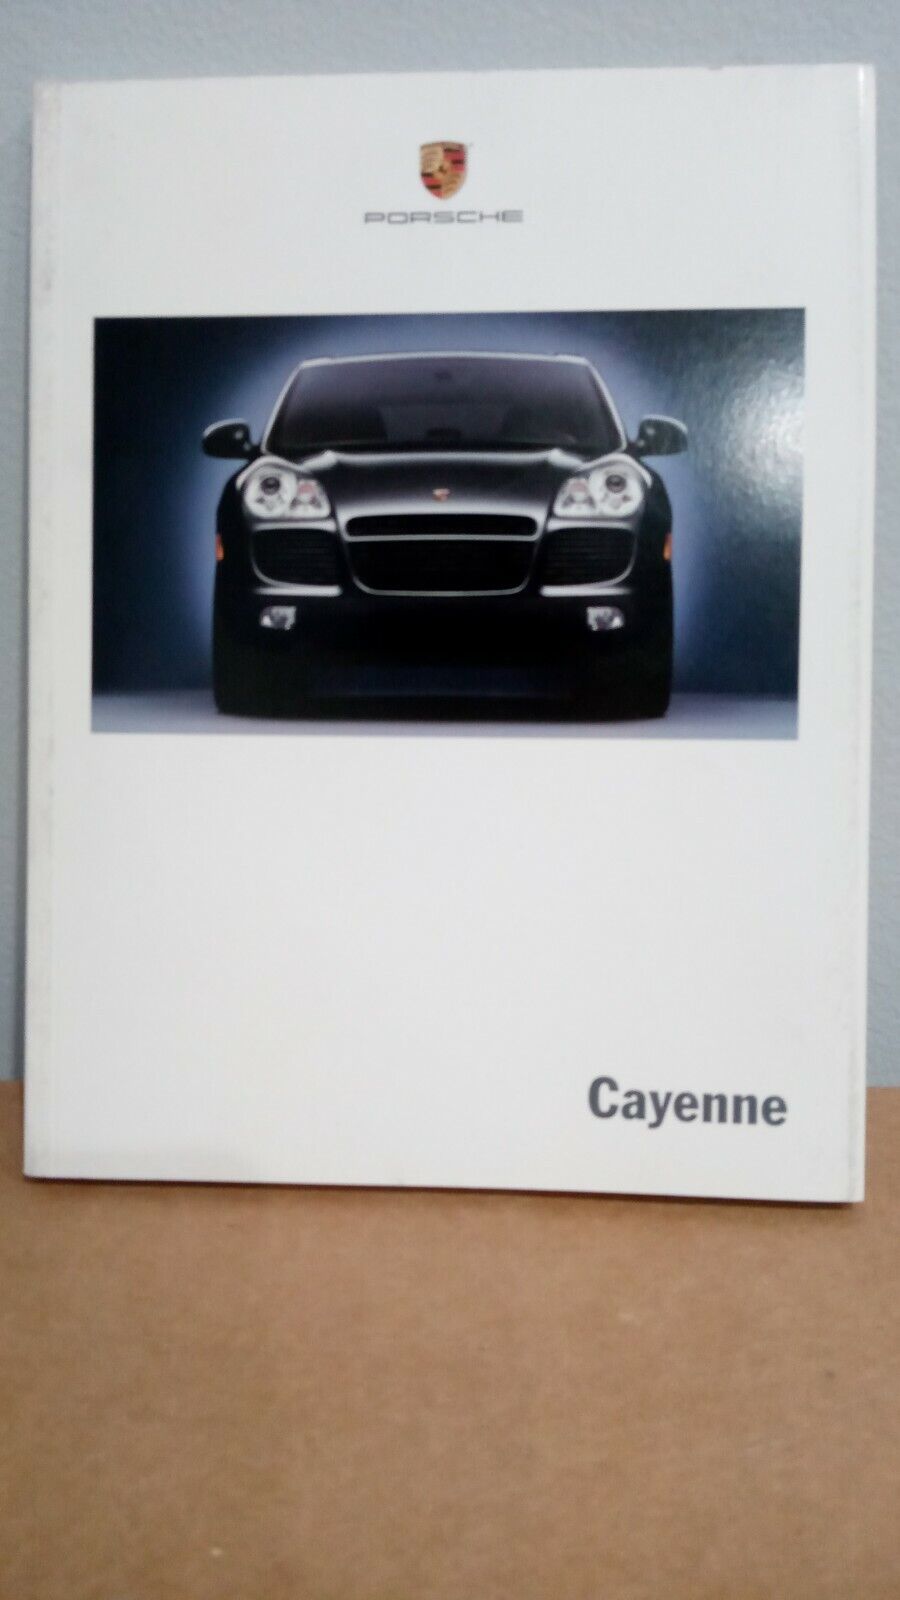 2002 Porsche CAYENNE  Sales Brochure - 130 pages